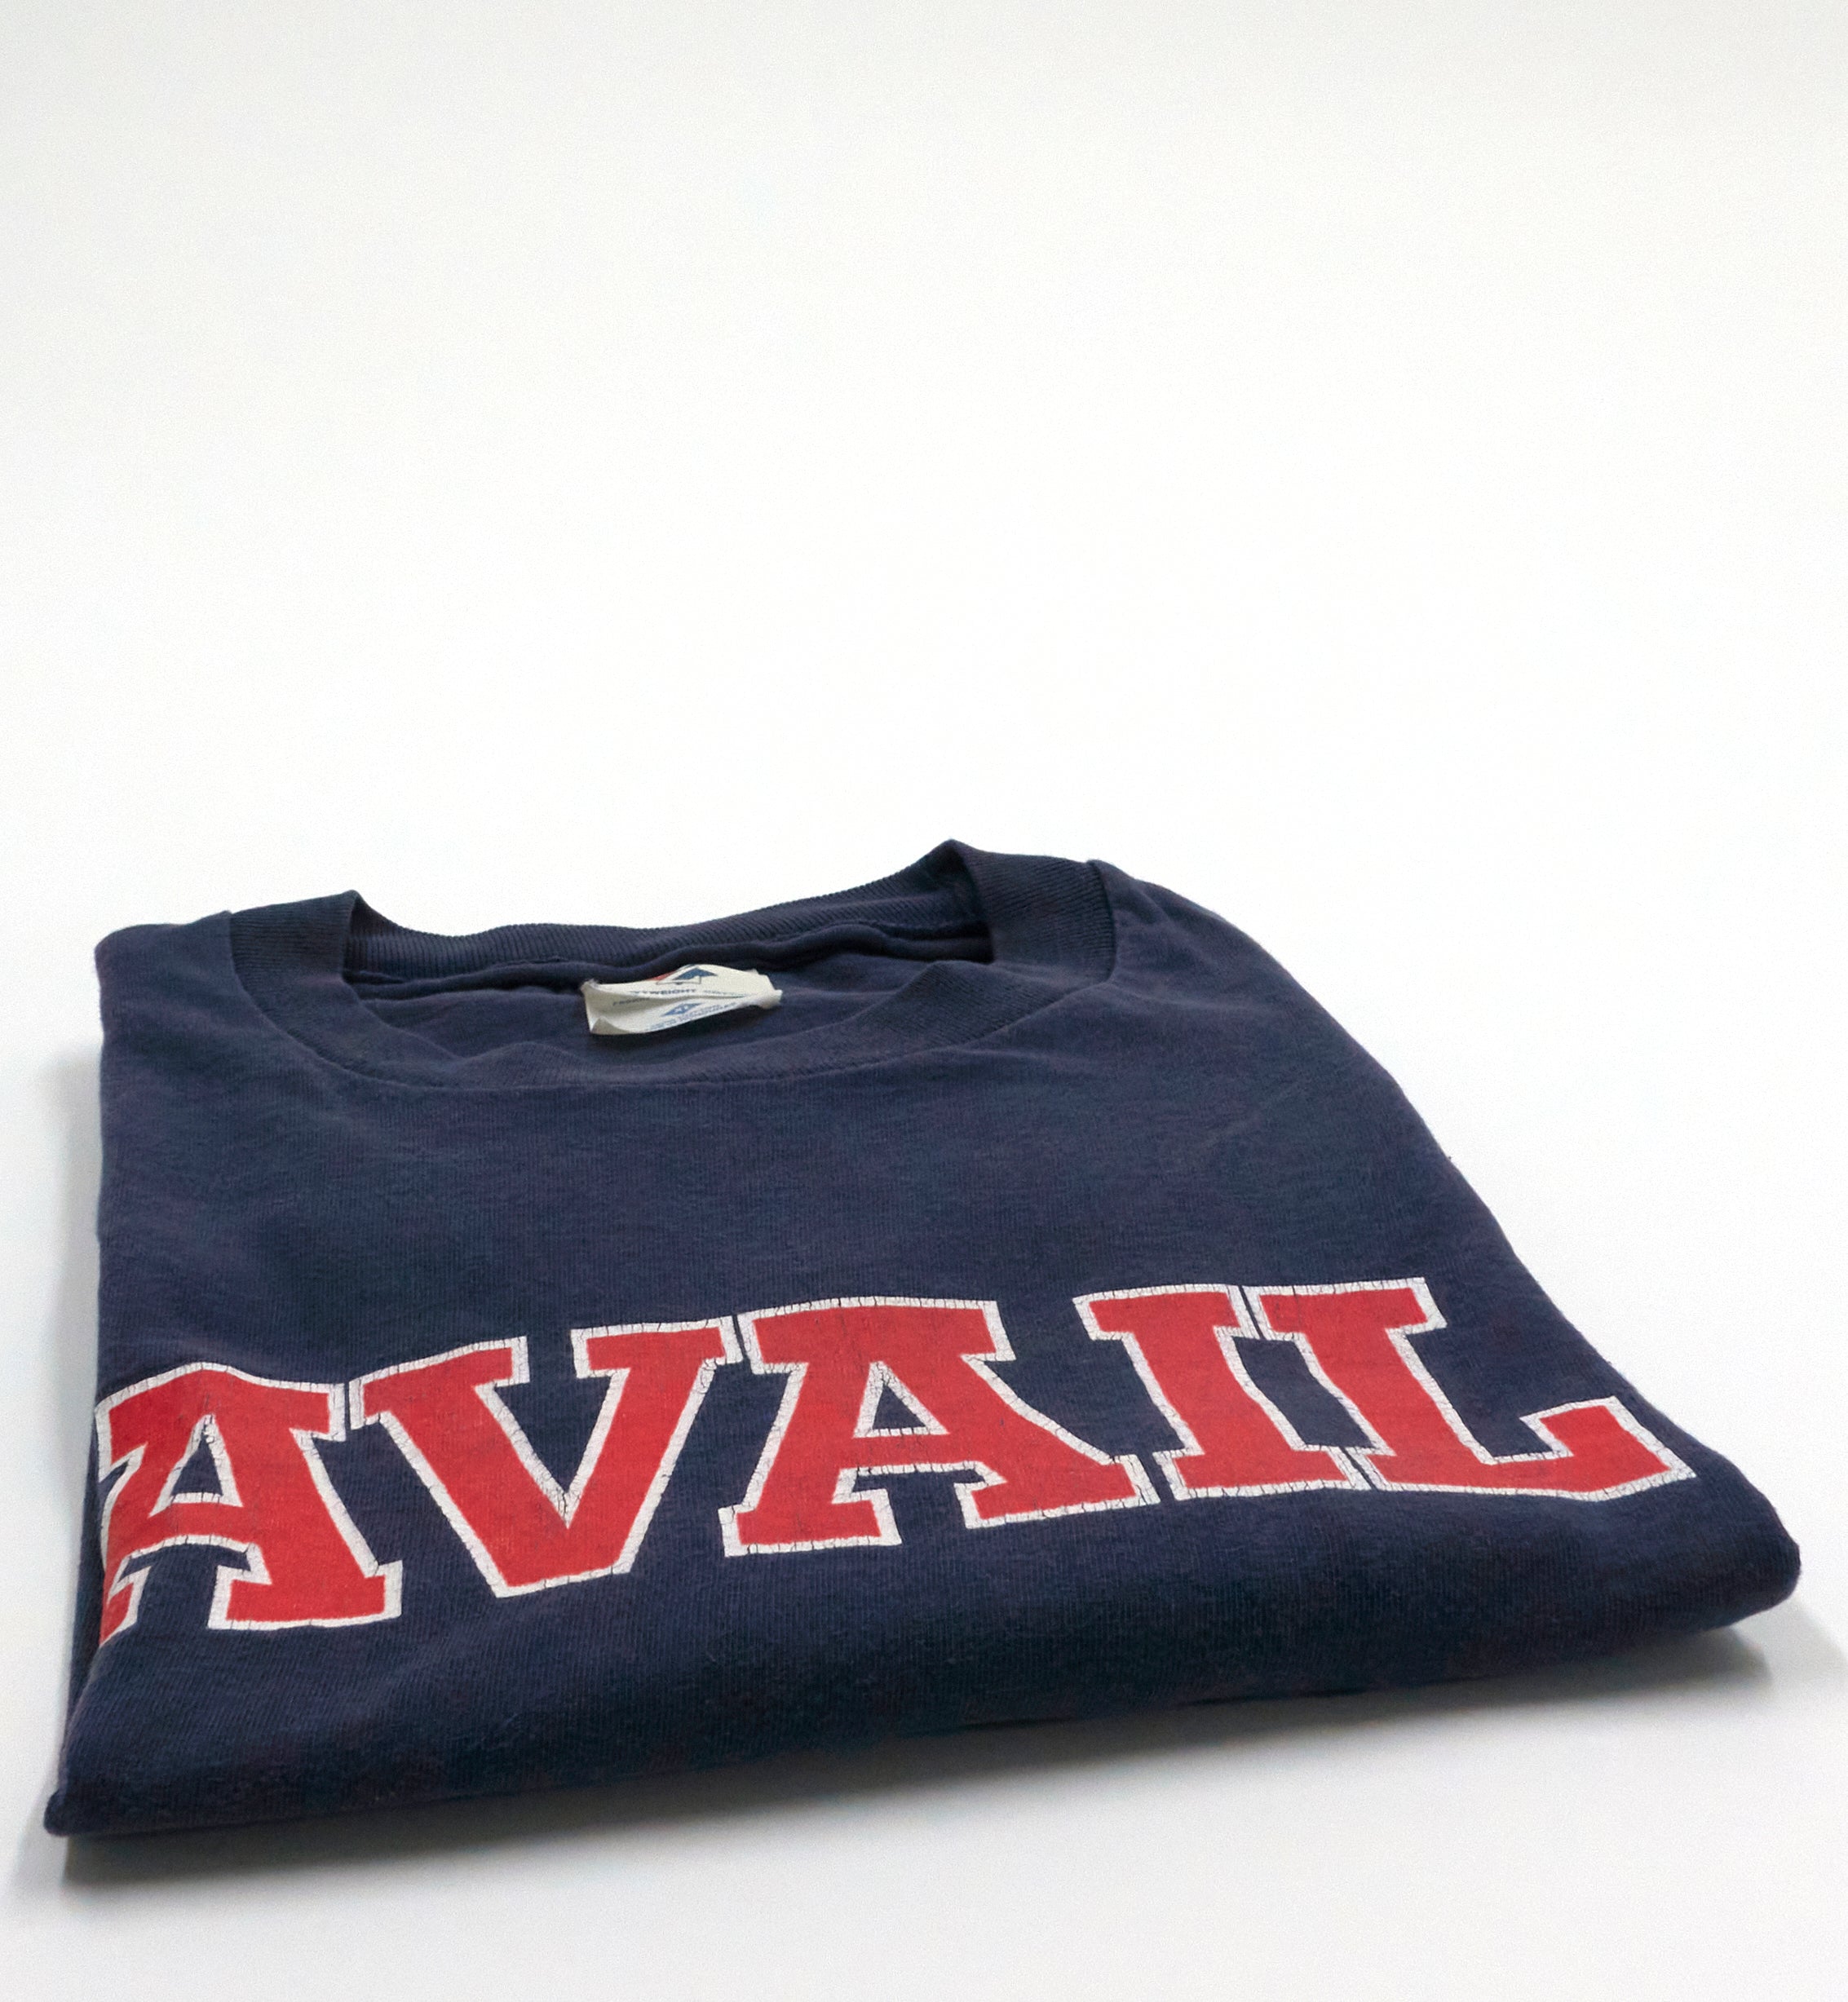 Avail - Dixie College Font 1994 Tour Shirt Size XL